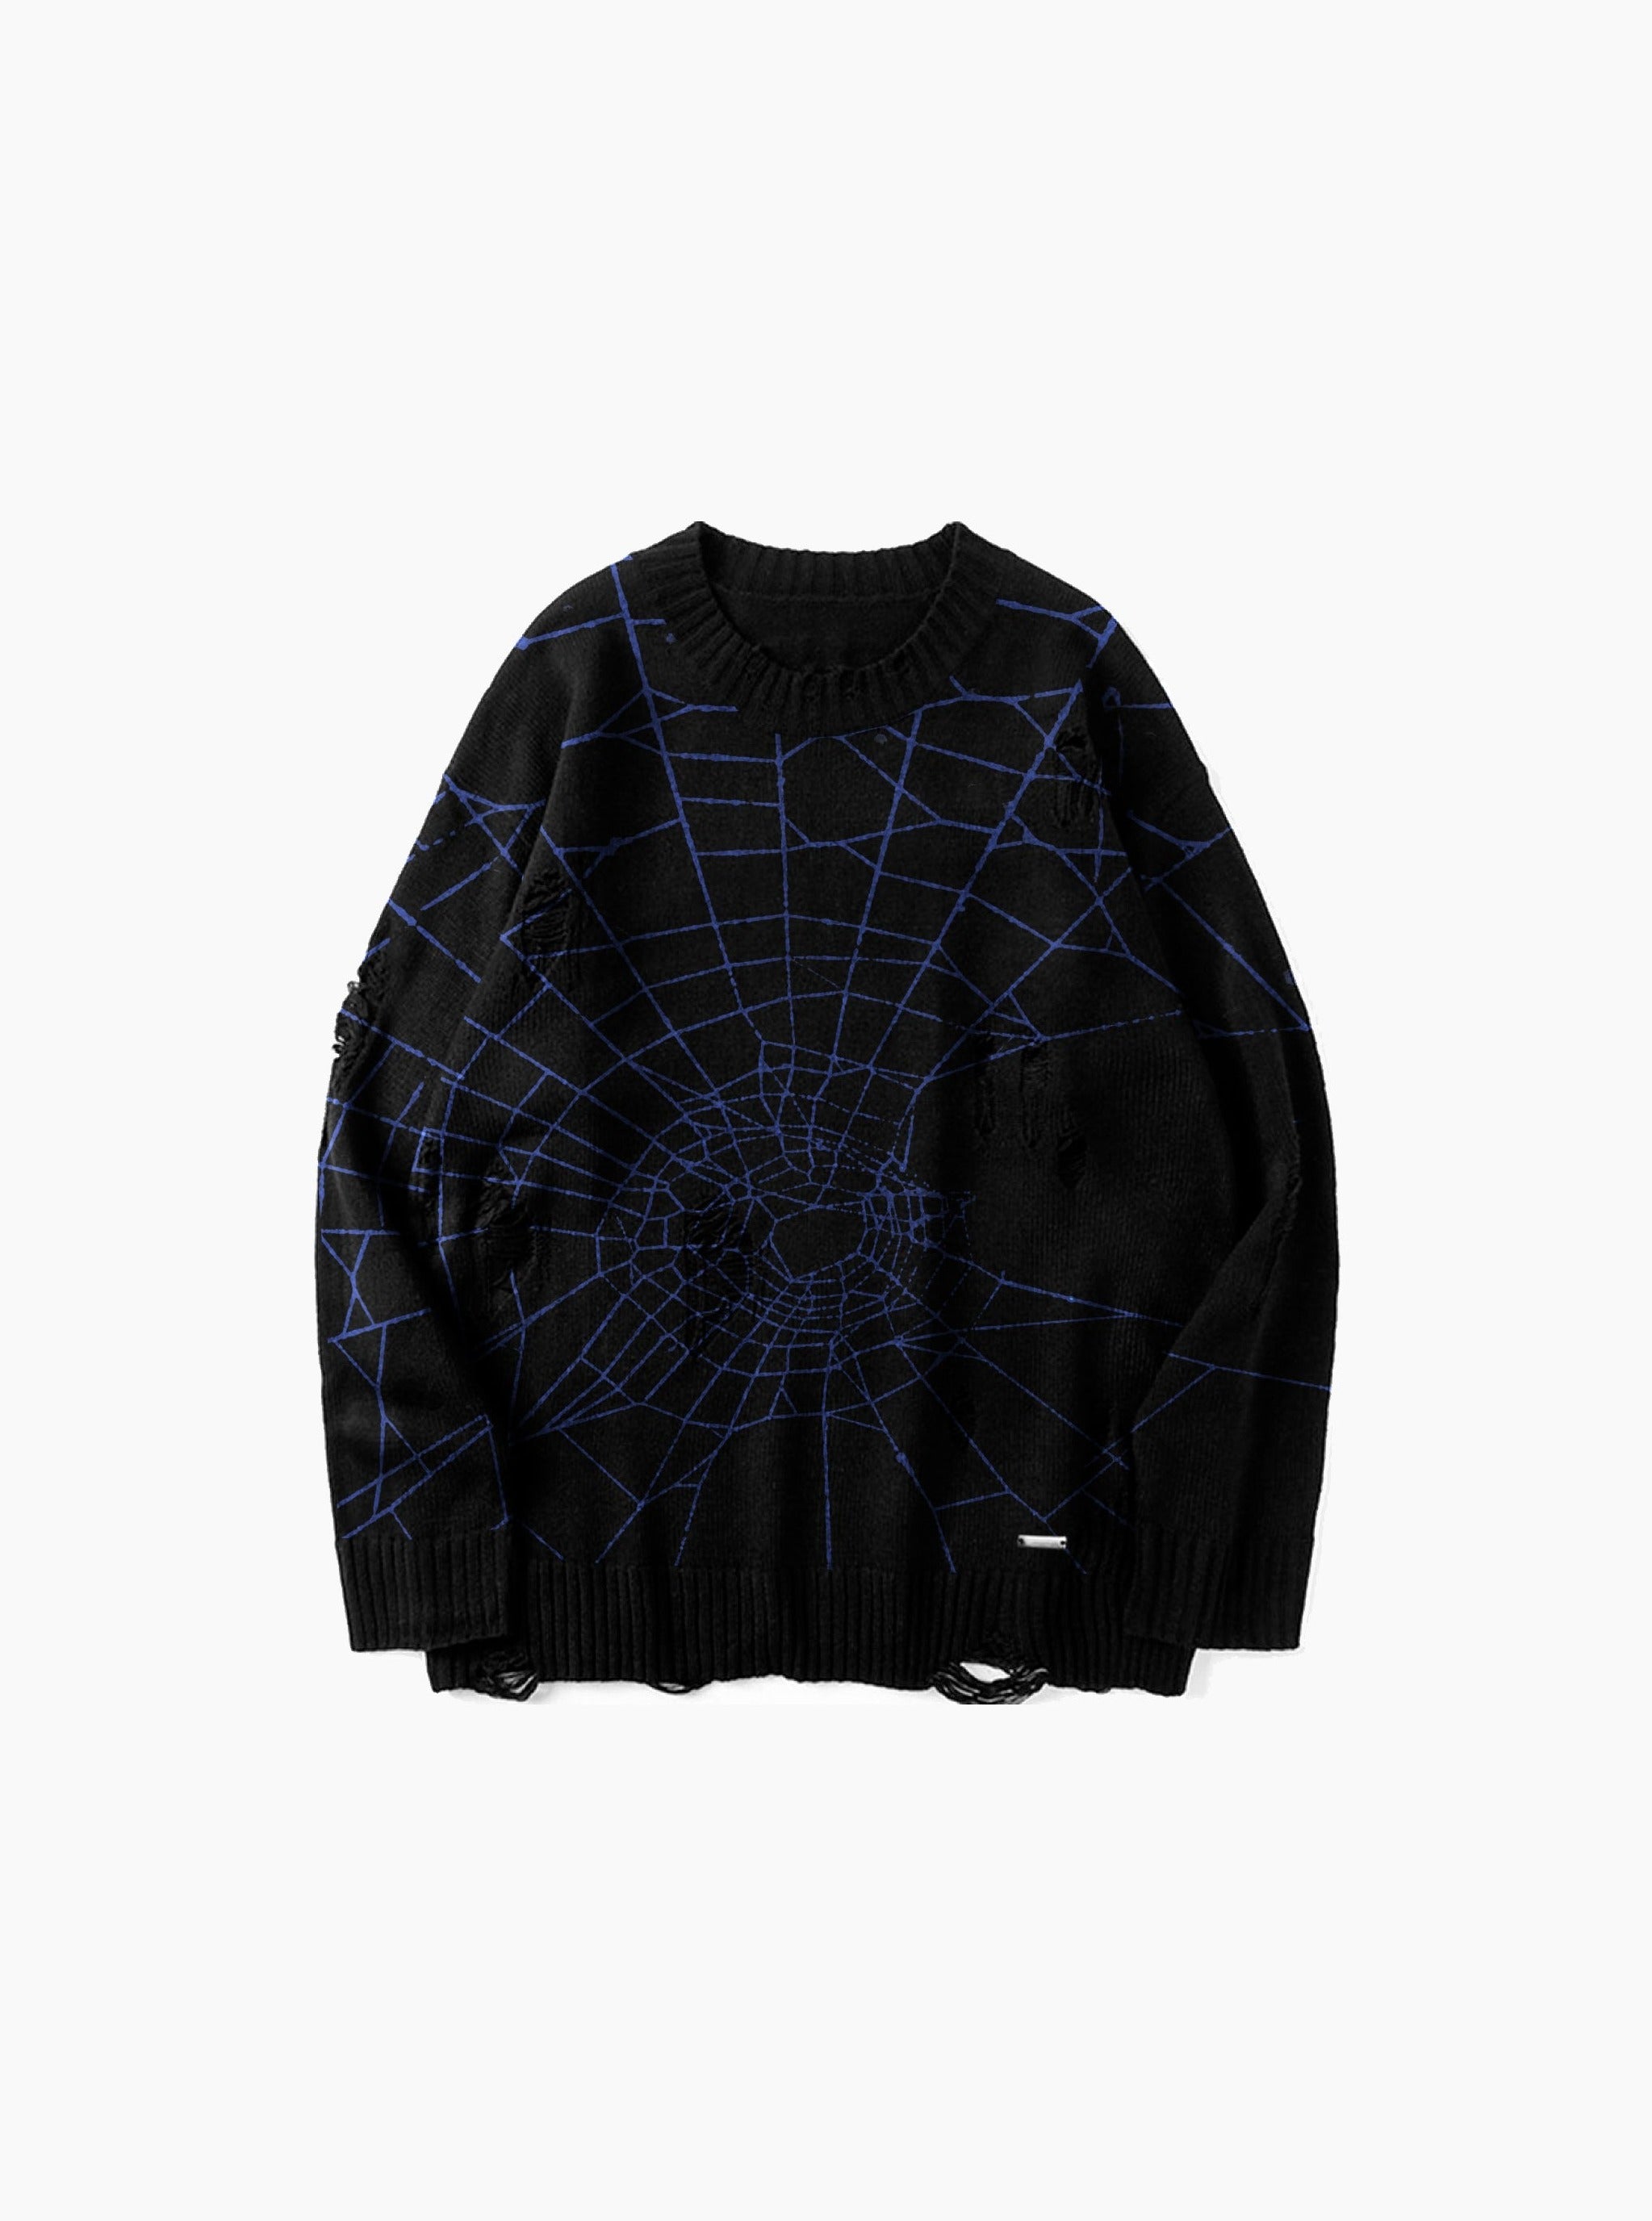 Sole et. Al Dark Web - Maglione a maglia con segni di usura